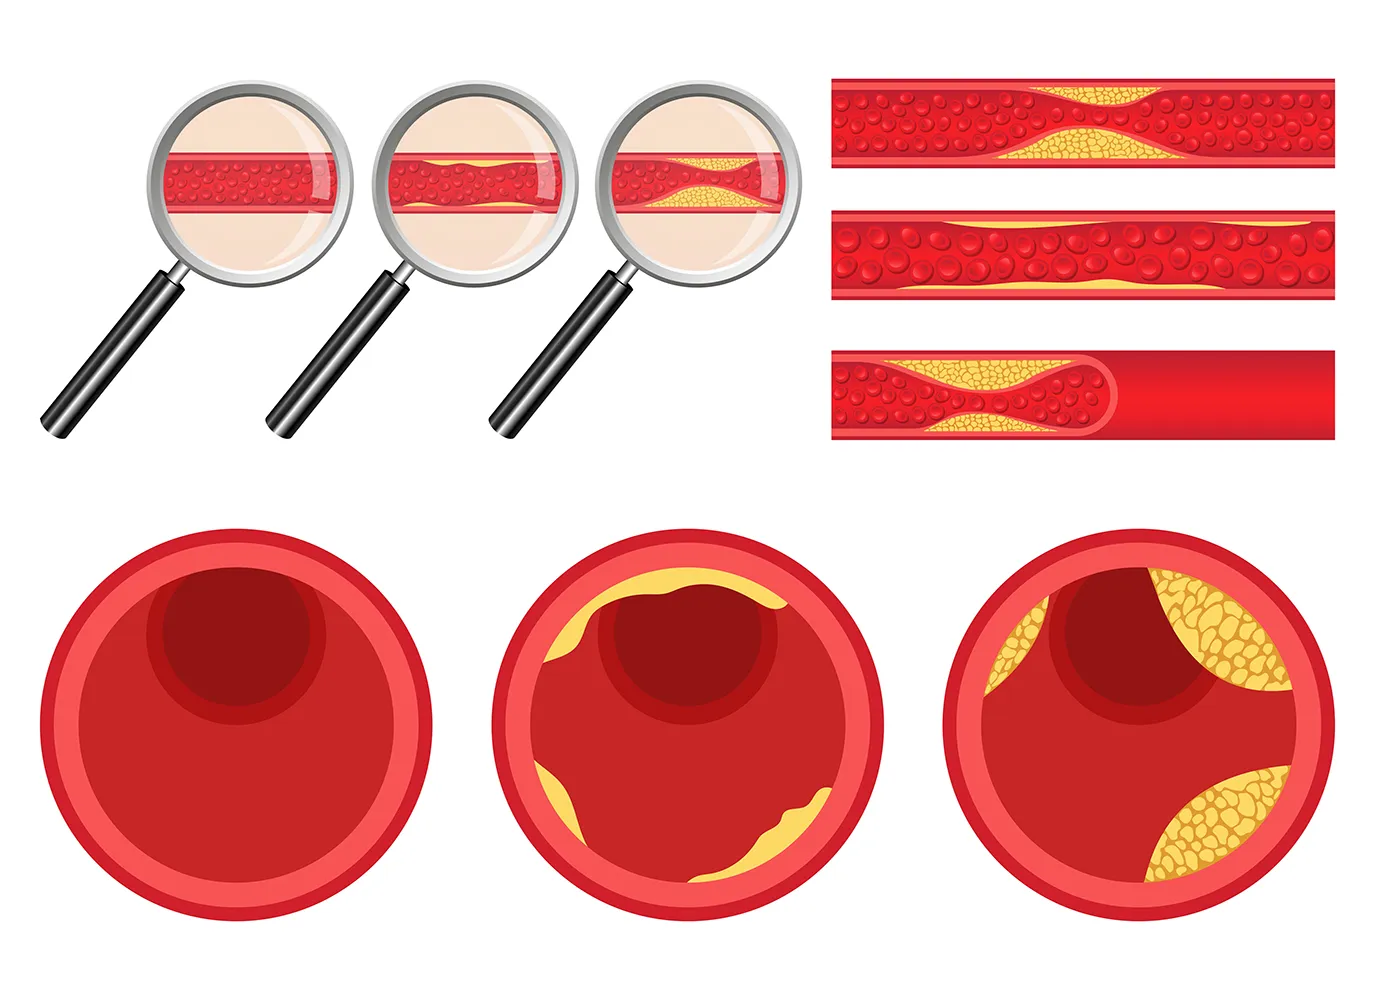 정상-혈관과-동맥경화가-발생된-혈관-비교-이미지